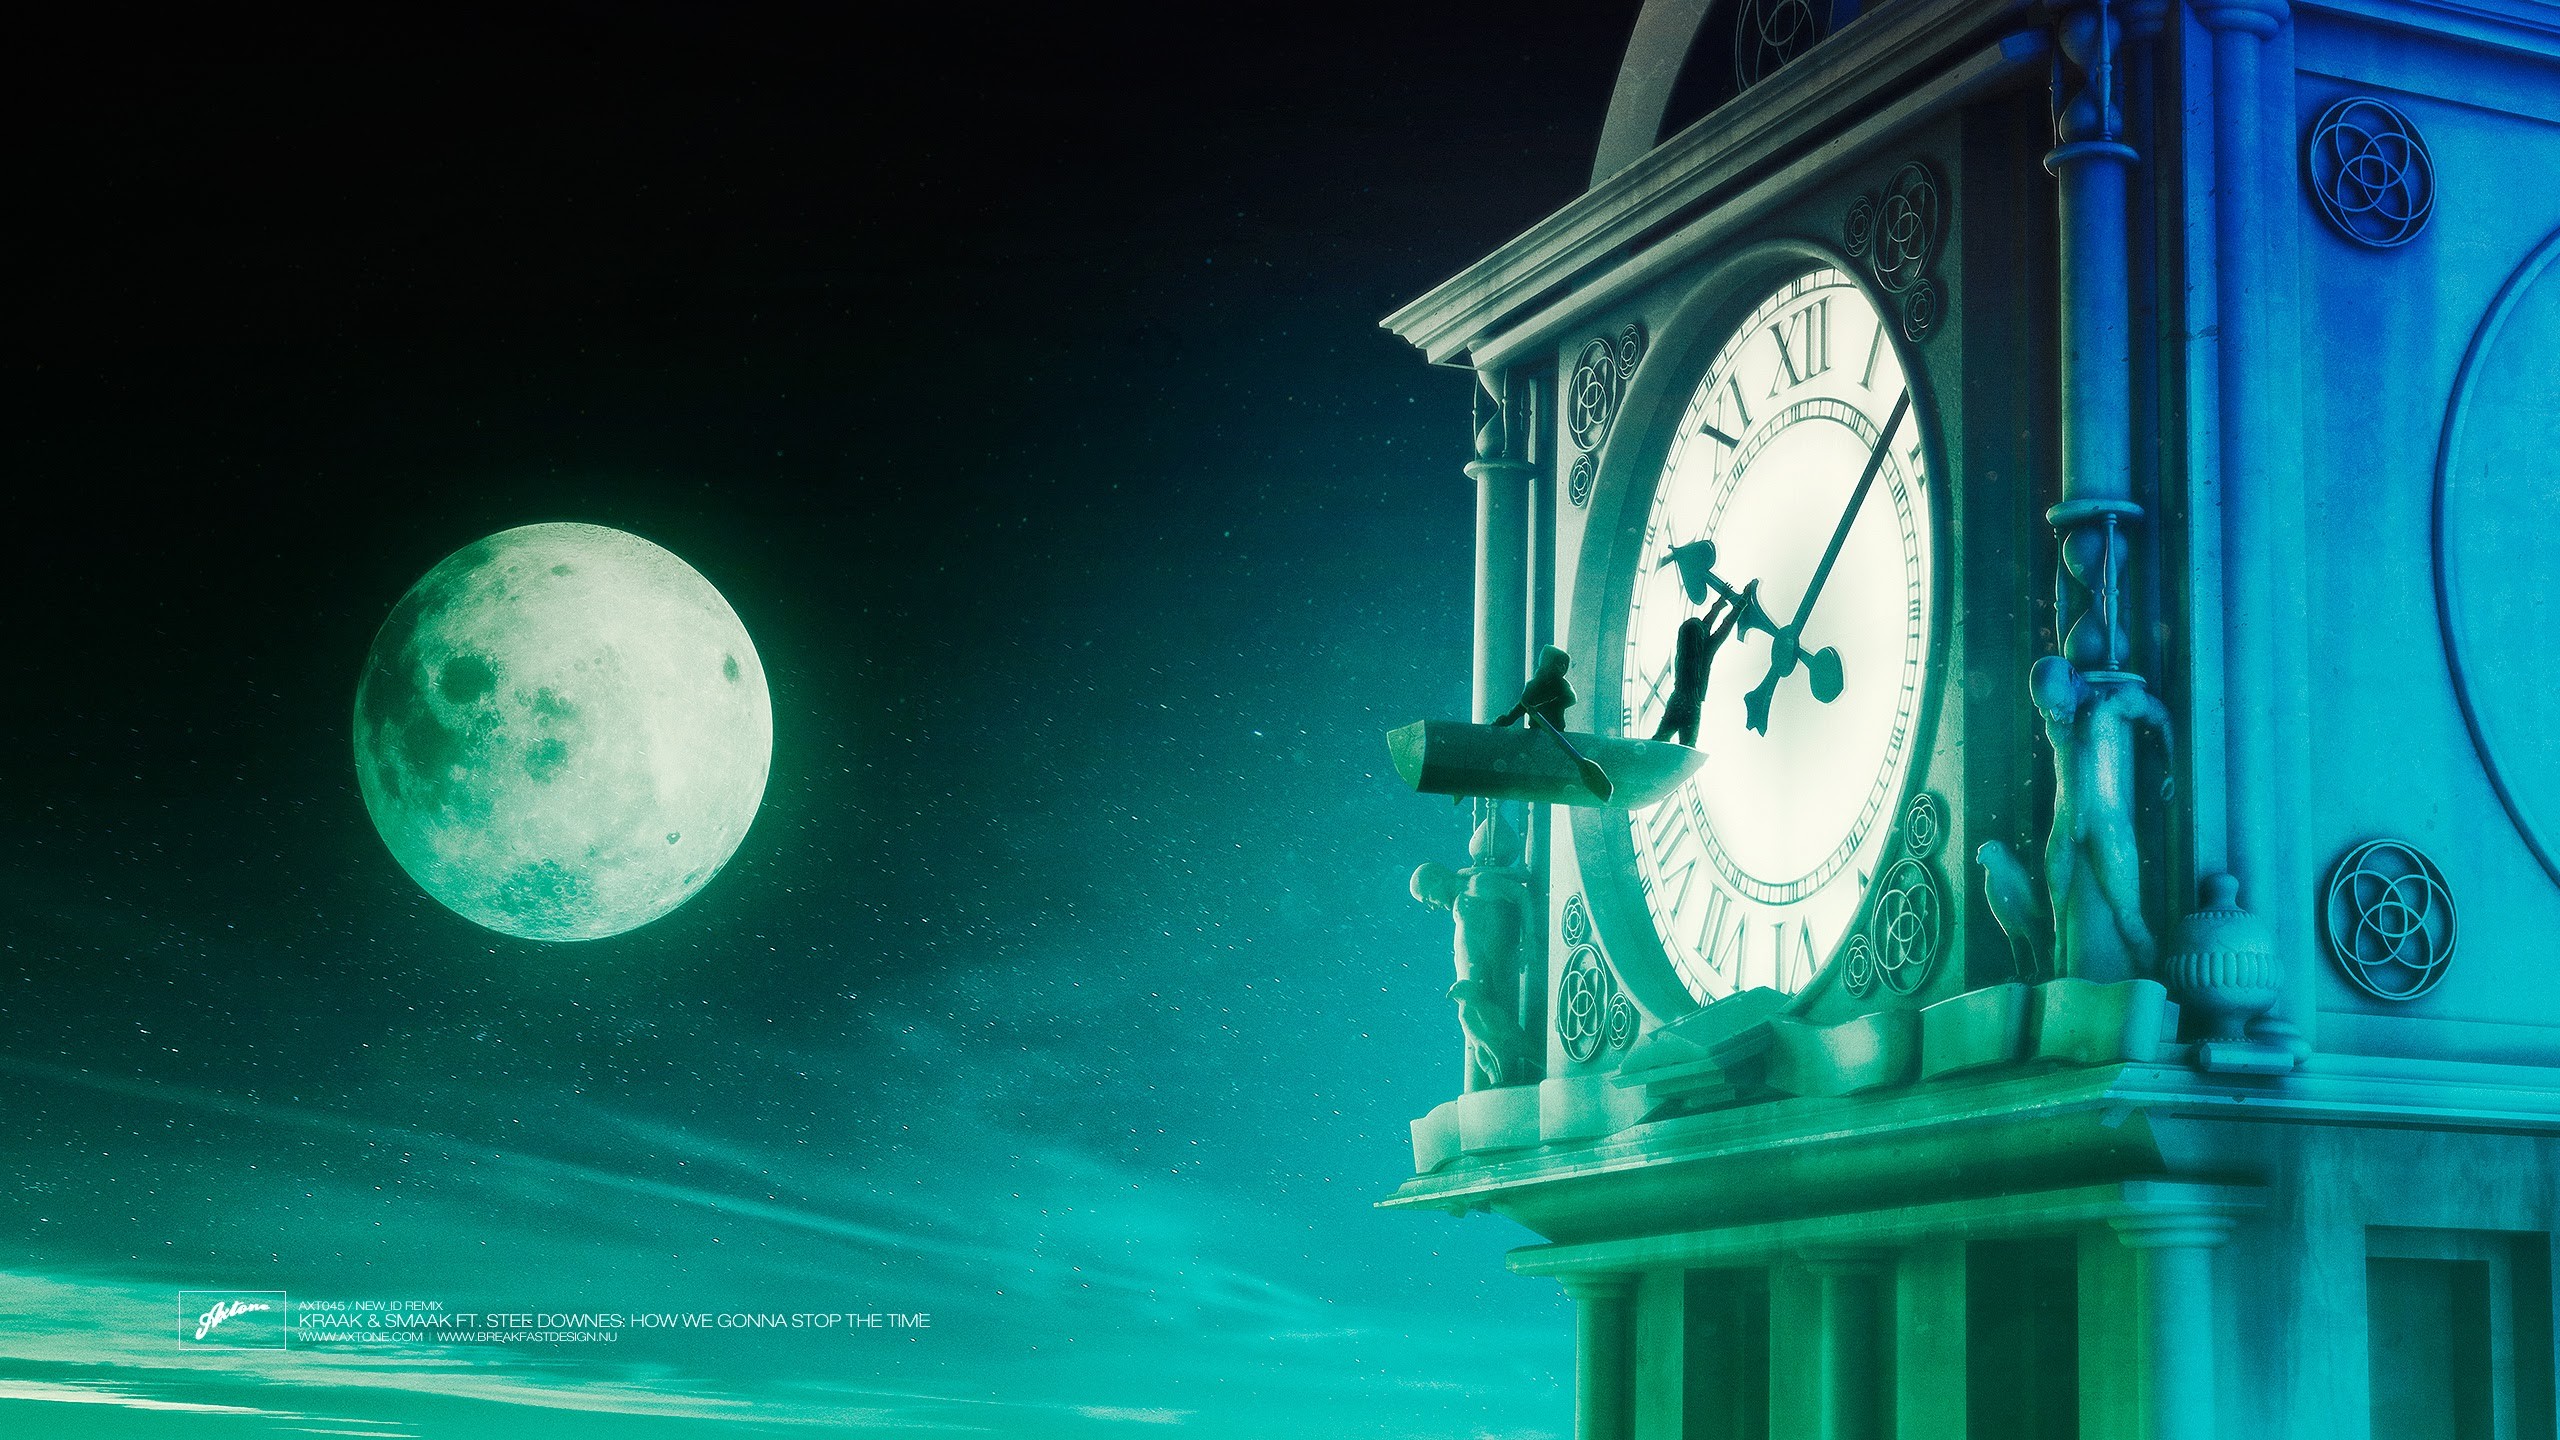 General 2560x1440 Axtone album covers clocks Moon fantasy art Jinx (League of Legends)